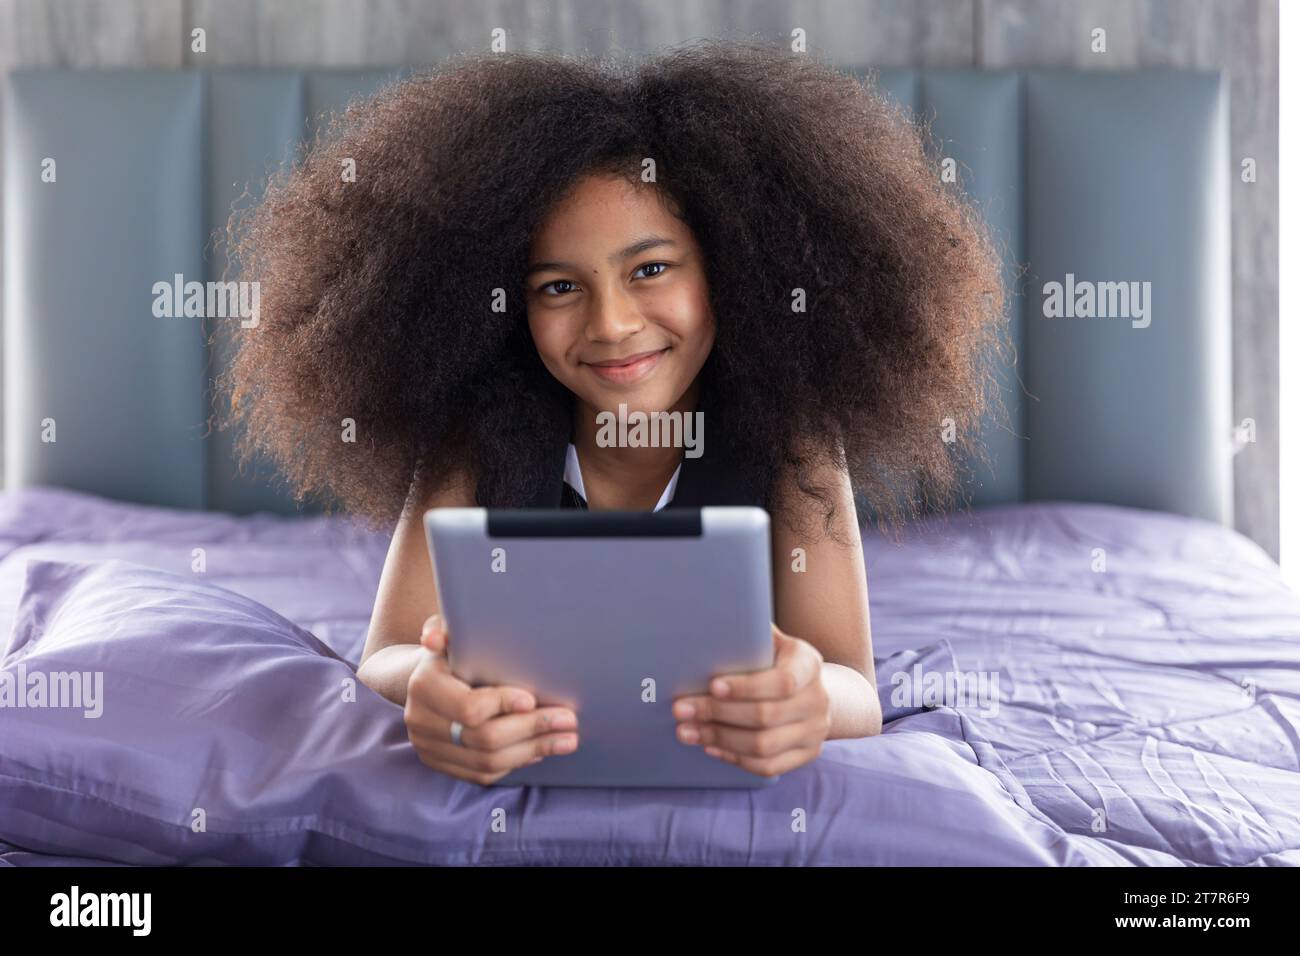 Afrikanisches schwarzes Kind Mädchen Afro-Haar niedlich schöne Liege auf dem Bett mit Tablet-Computer glückliches Selbstlernen zu Hause Urlaub, Porträt lächelnd aussehende Kamera. Stockfoto